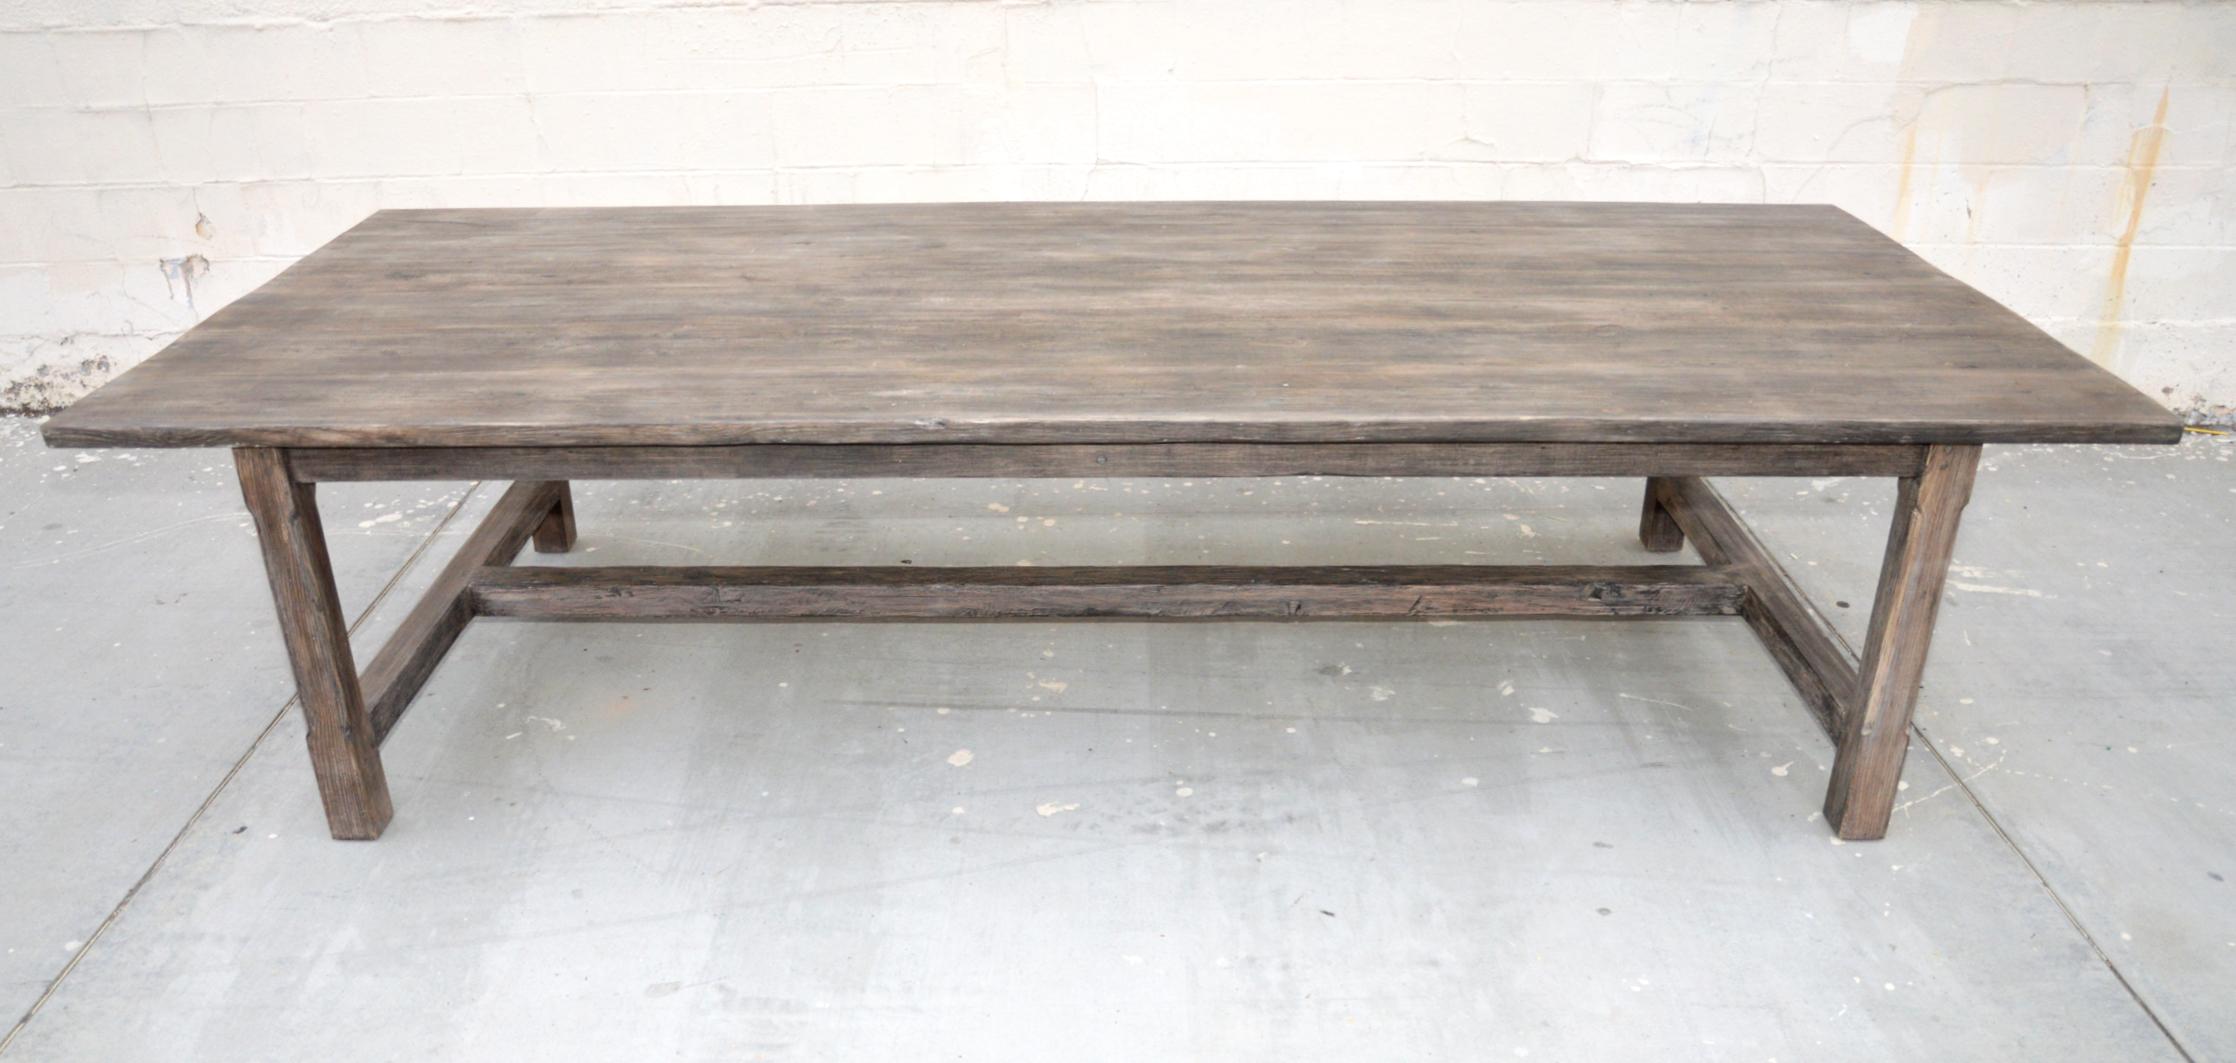 Cette table est fabriquée à partir de pin de cœur récupéré, sélectionné à la main, et naturellement patiné au fil des décennies pour une grande patine authentique. 

La table présentée ici mesure 120